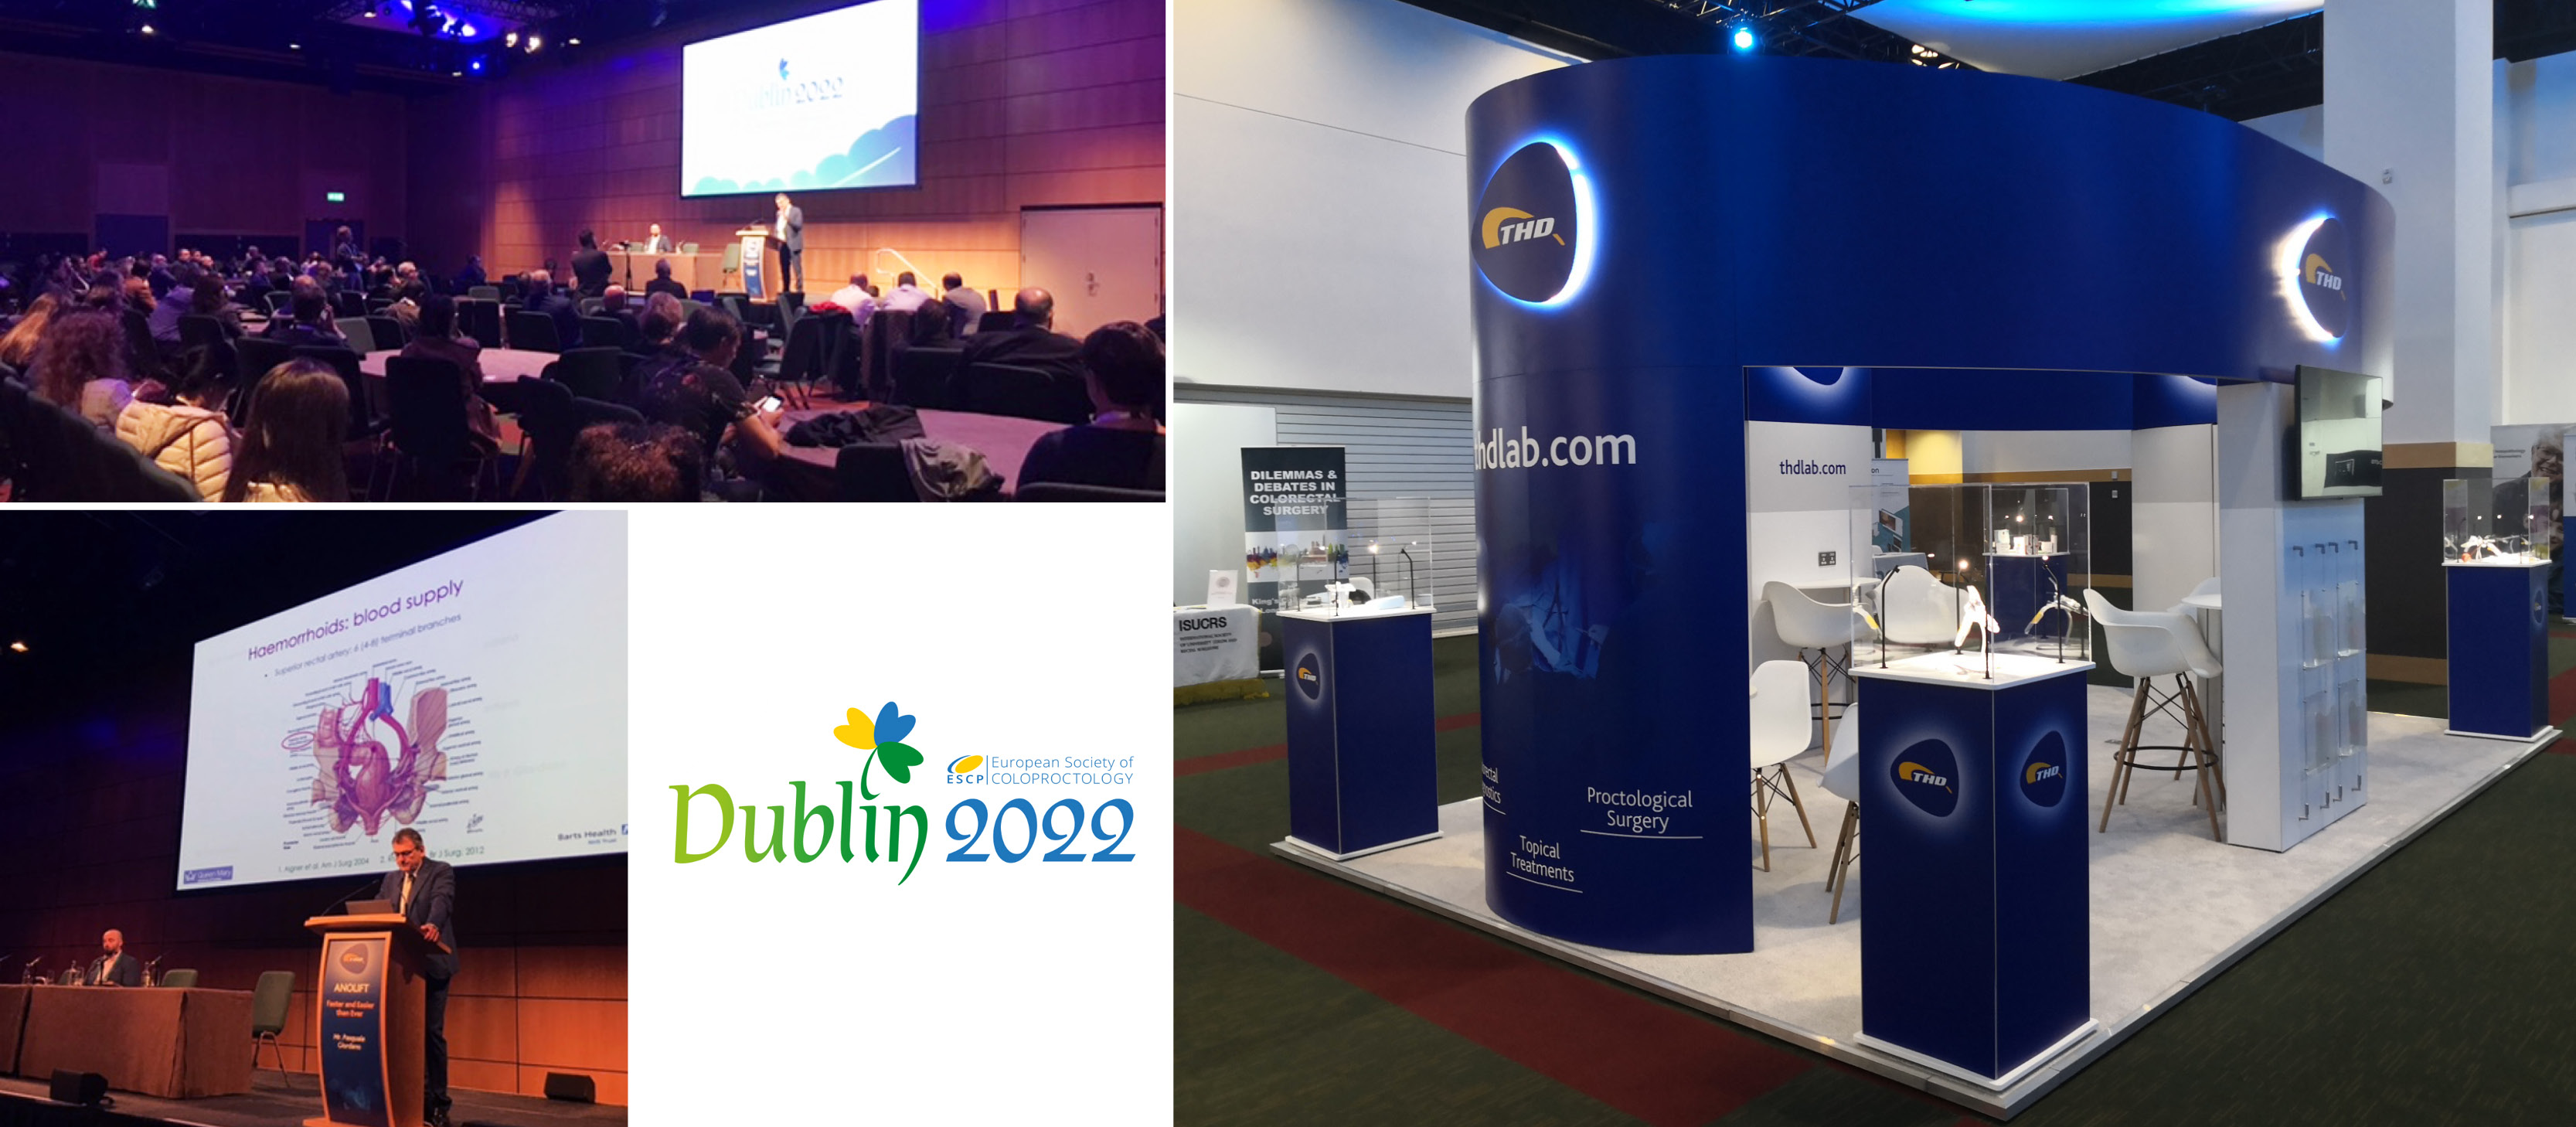 Dal 21 al 23 settembre 2022 THD era a Dublino per partecipare al Congresso Annuale della Società Europea di Coloproctologia (ESCP).